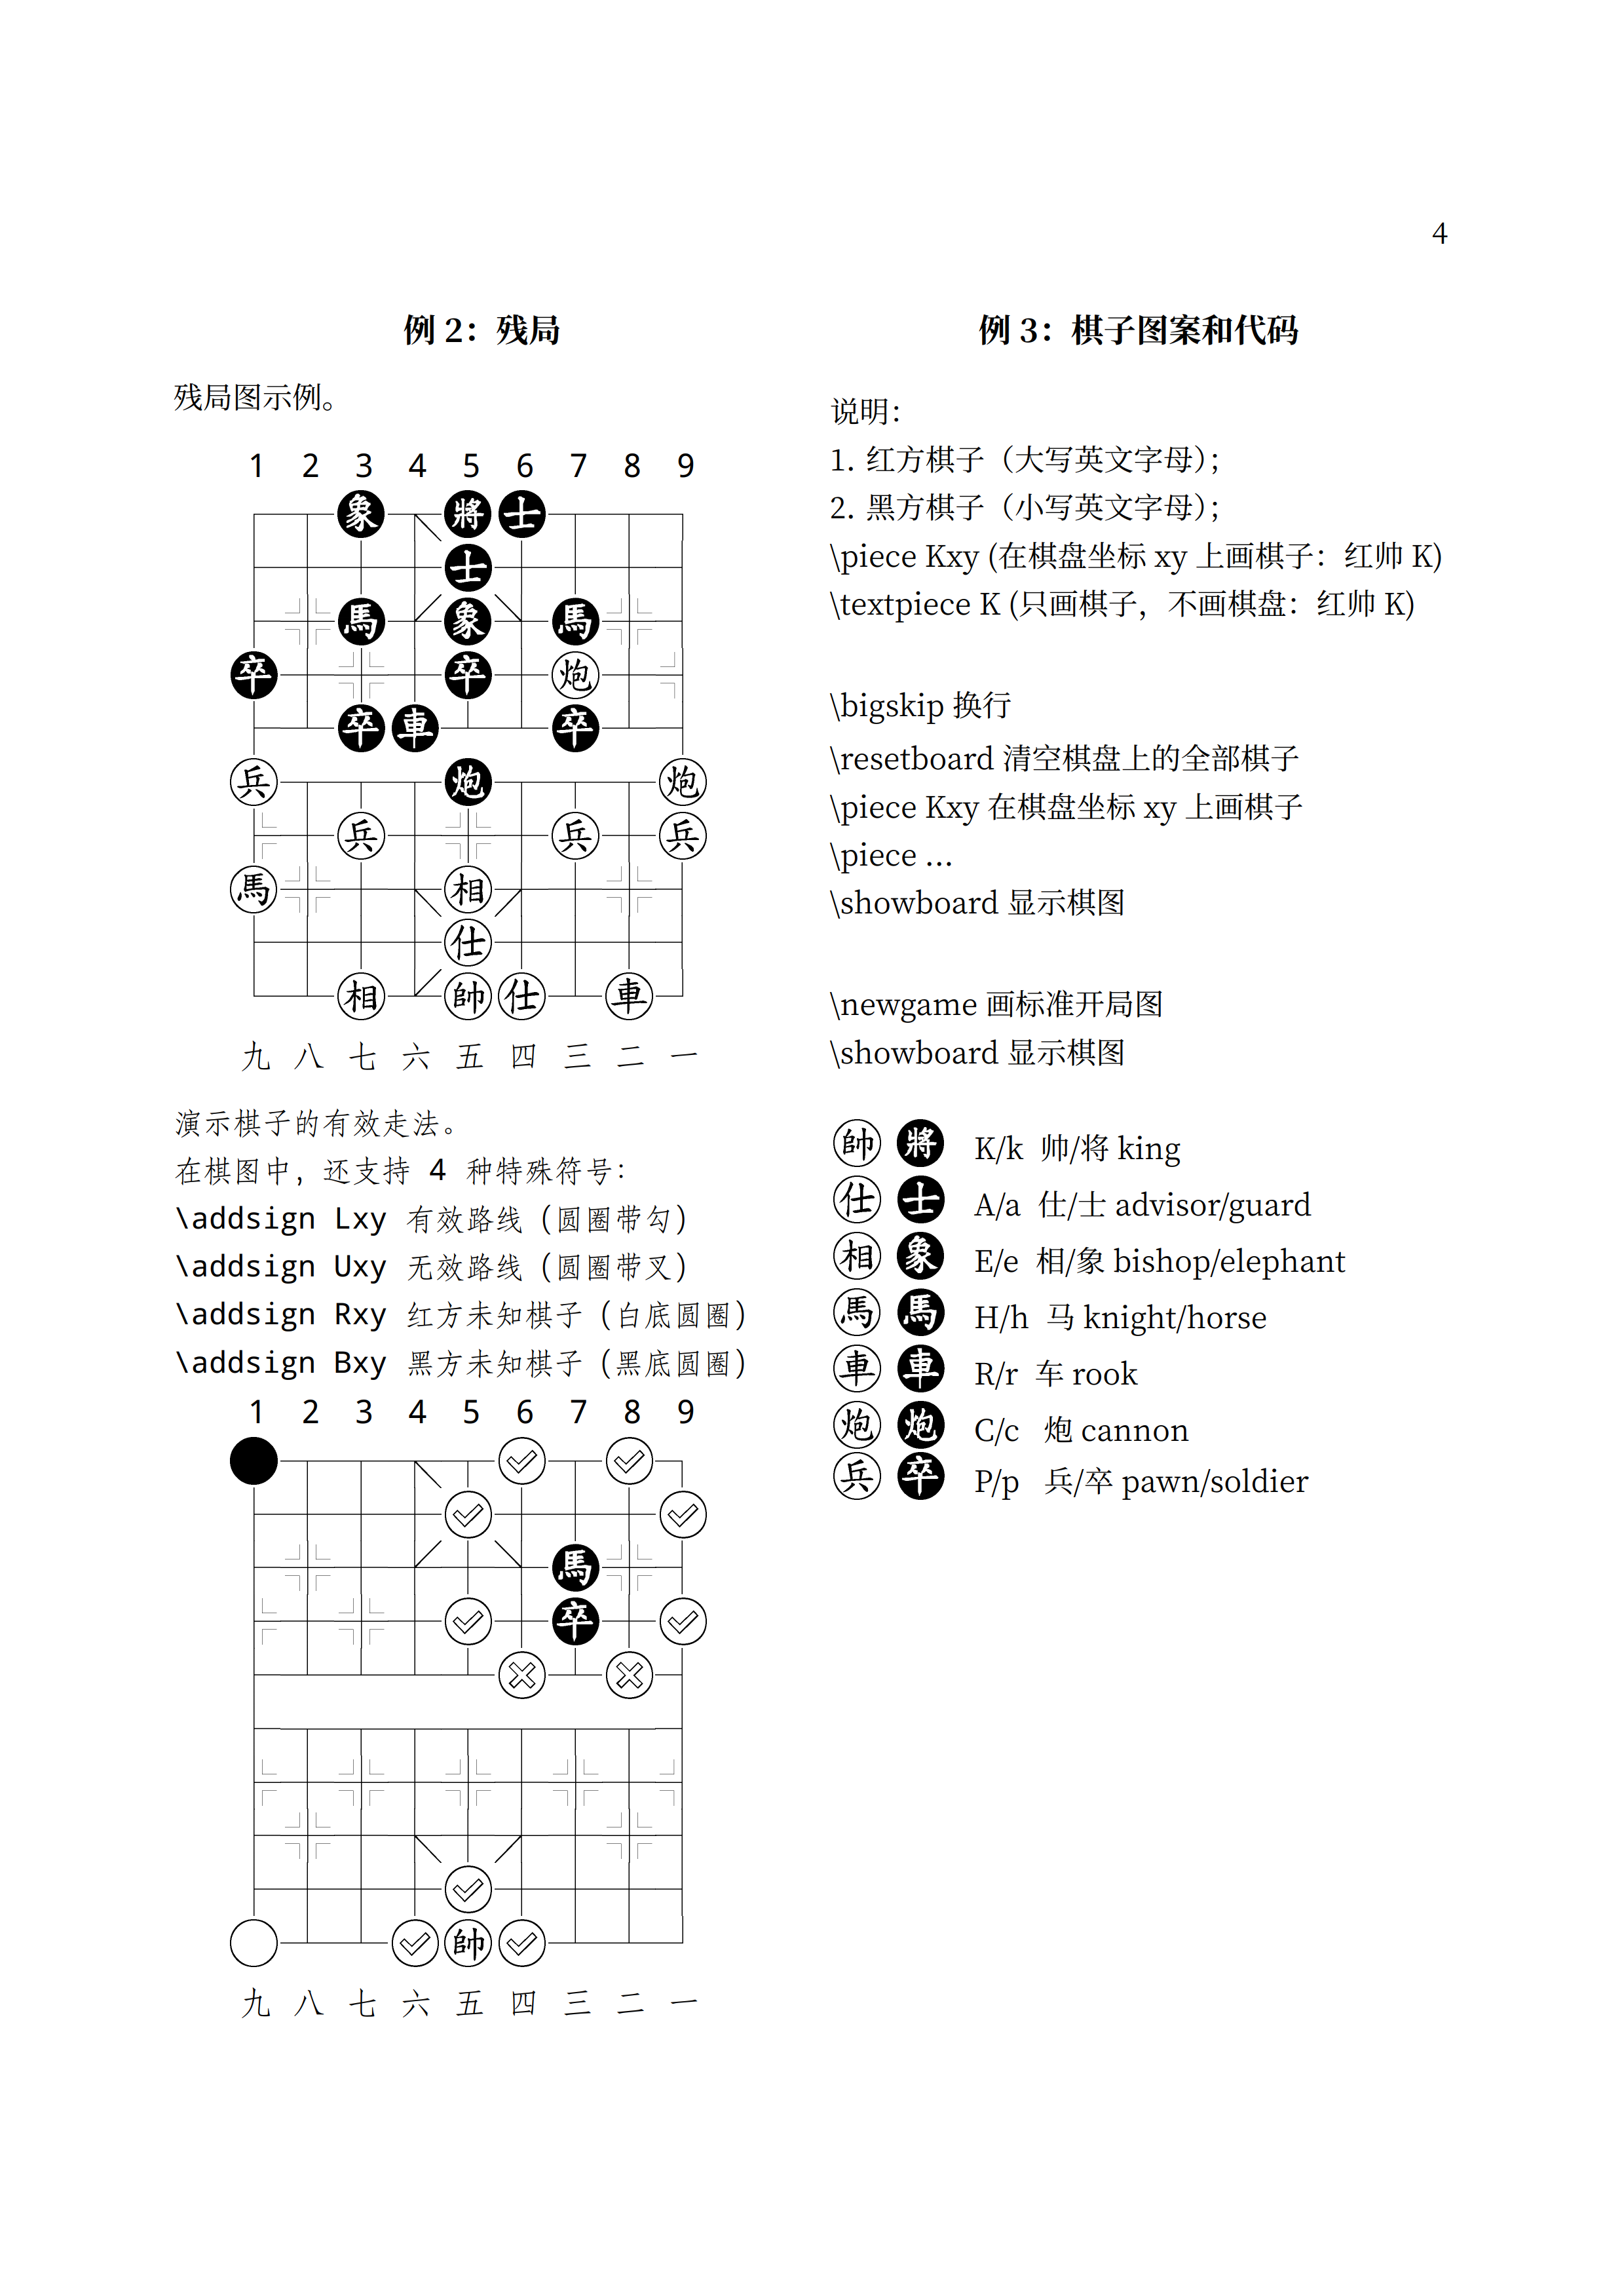 中国象棋宏包 xq.sty 的微调版 xiangqi.sty